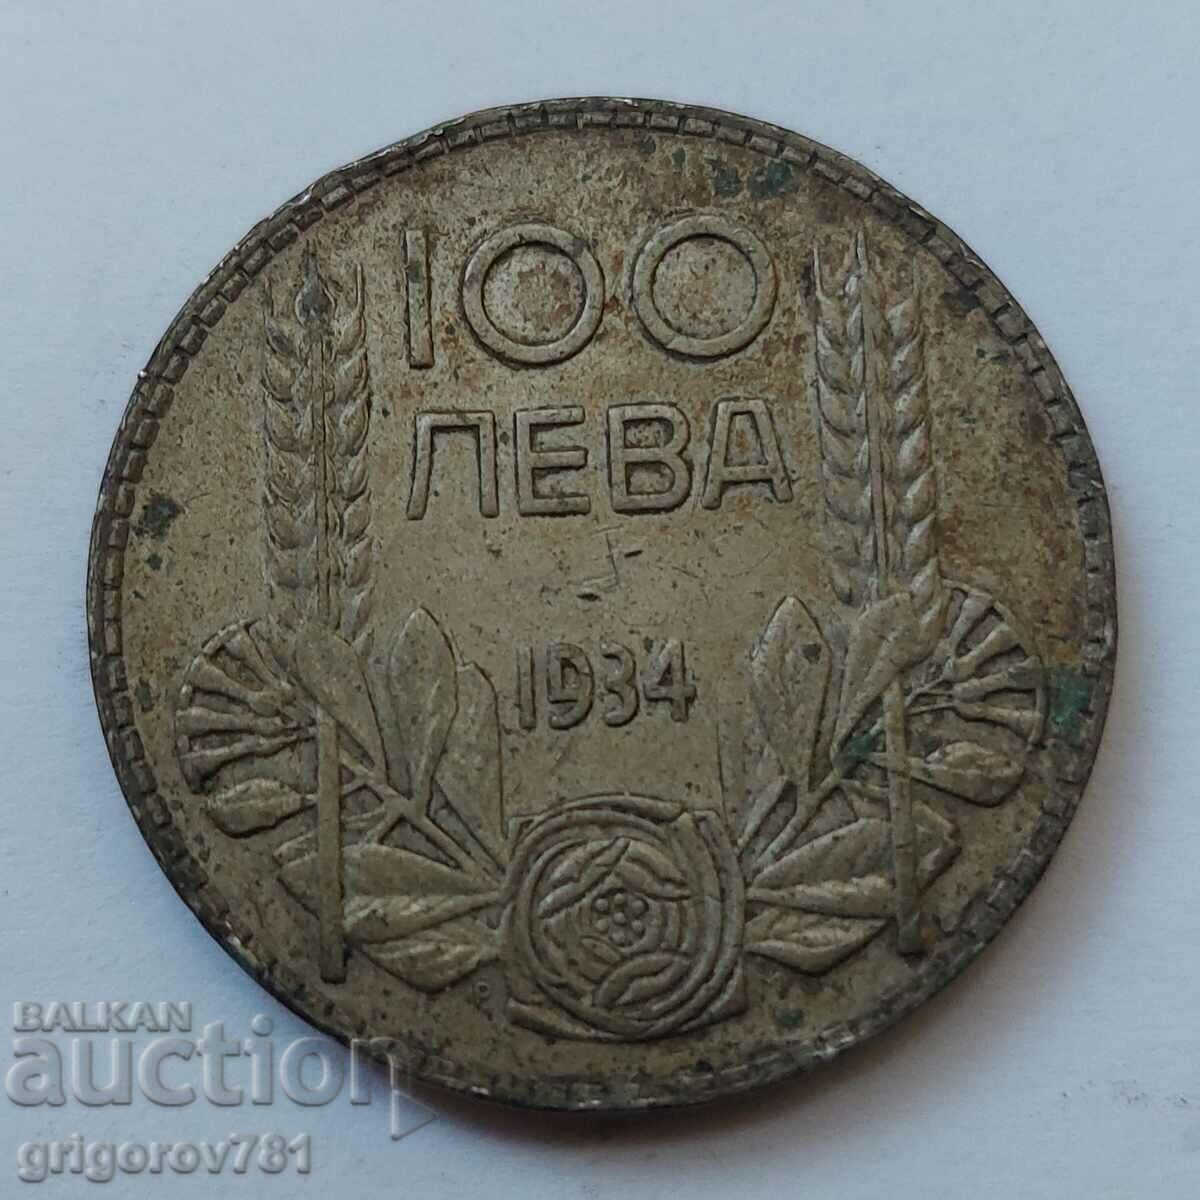 Ασήμι 100 λέβα Βουλγαρία 1934 - ασημένιο νόμισμα #24